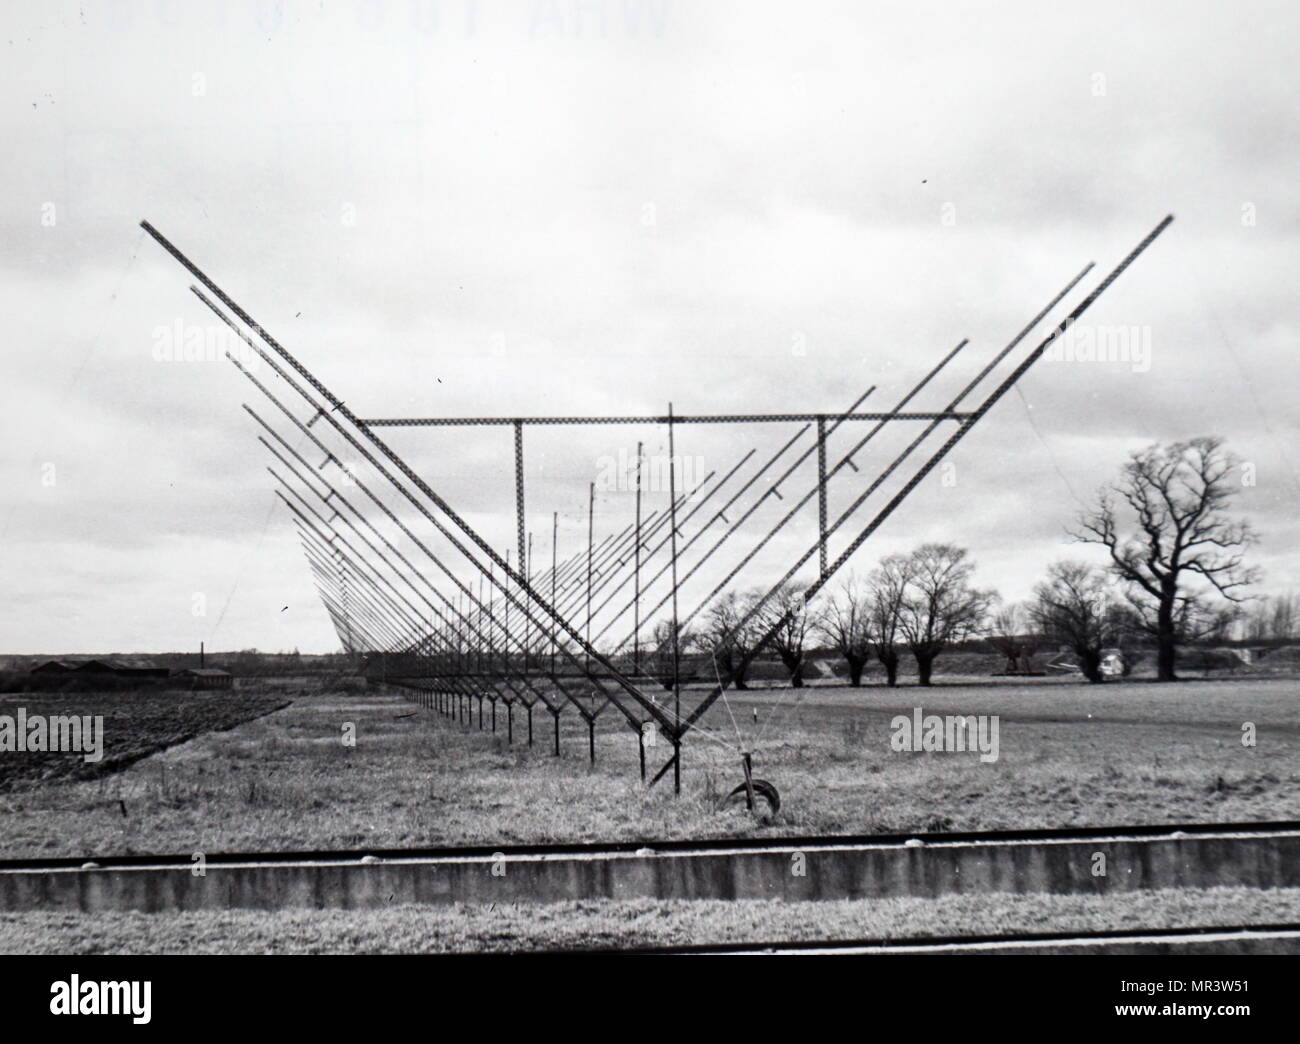 Foto von einem festen Radio interferometer Antenne an der Mullard Radio Astronomy Observatory, Cambridge. Vom 20. Jahrhundert Stockfoto